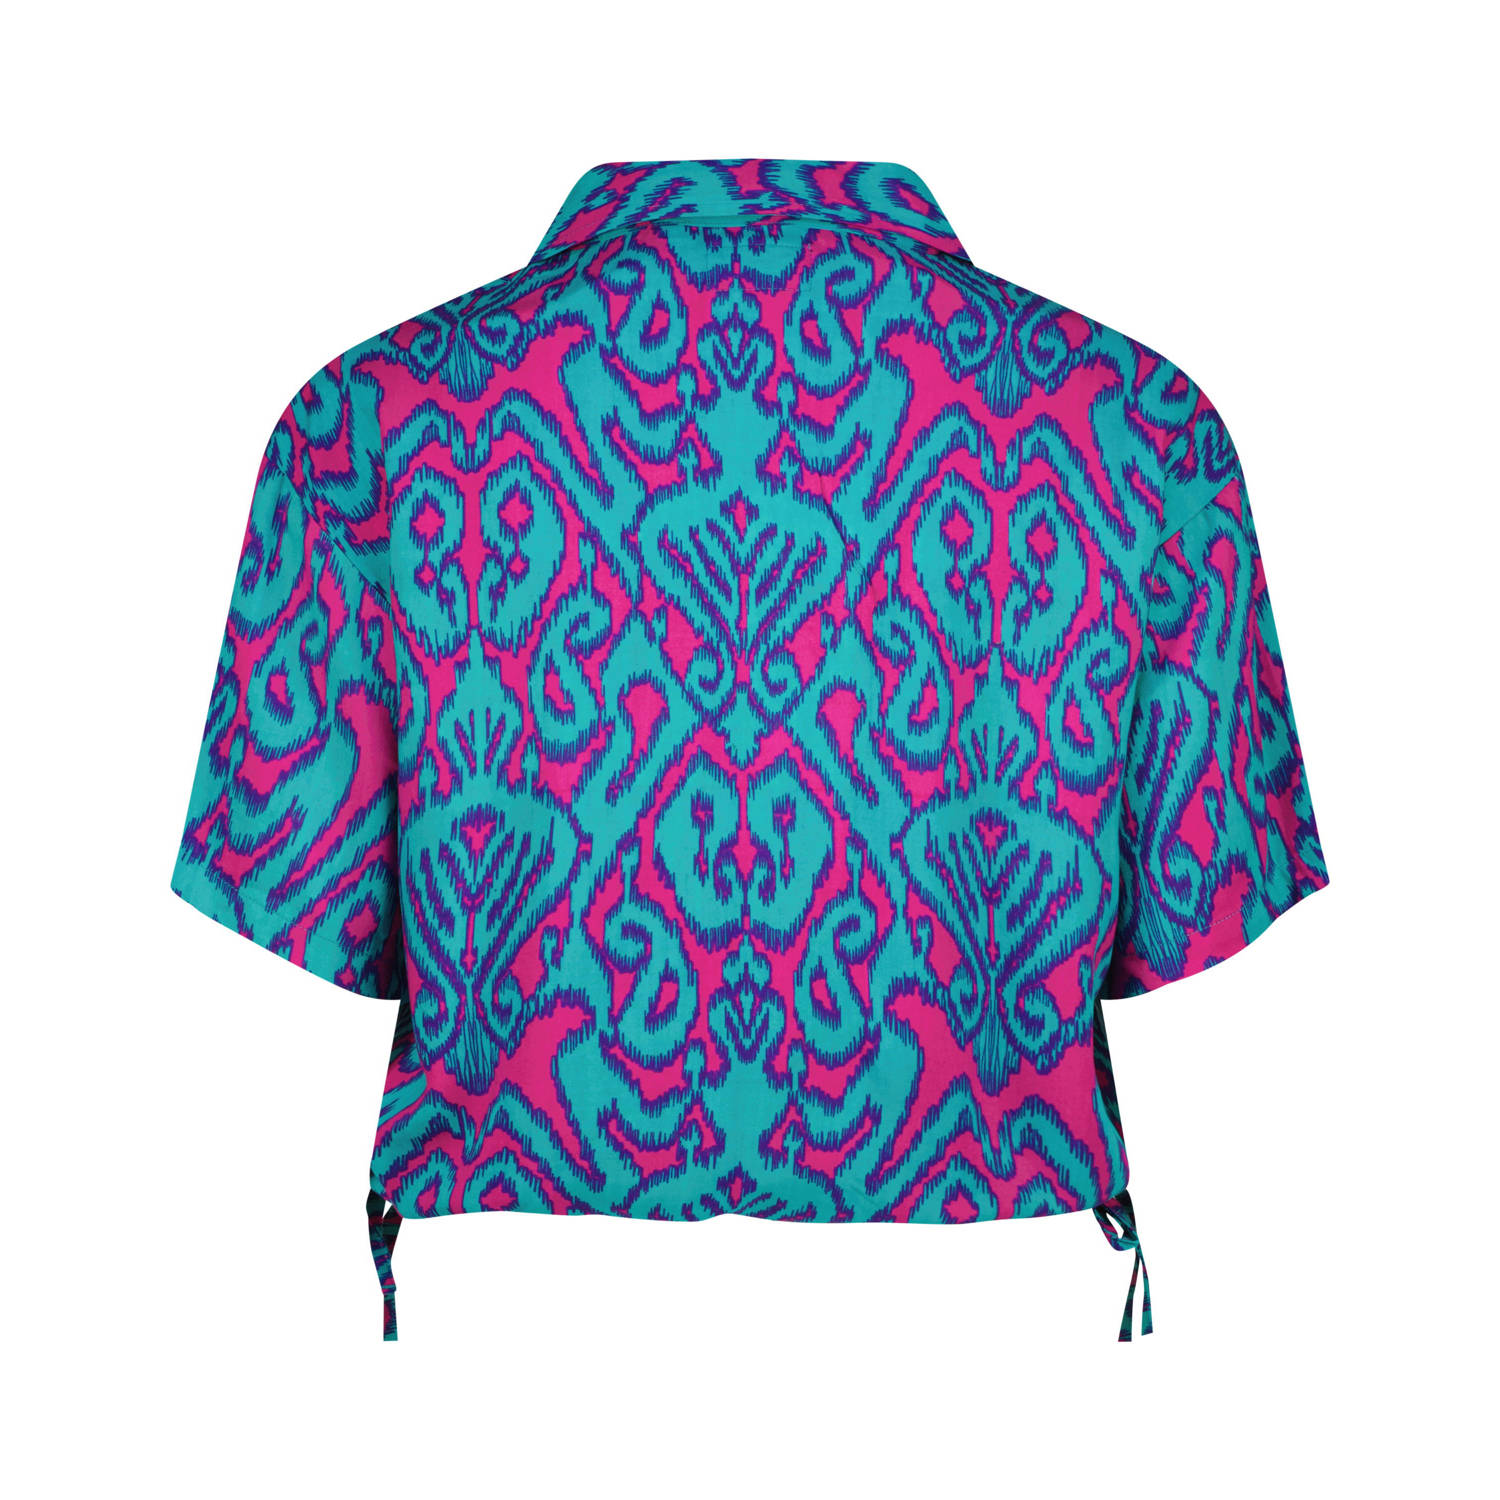 Raizzed blouse met grafische print paars blauw